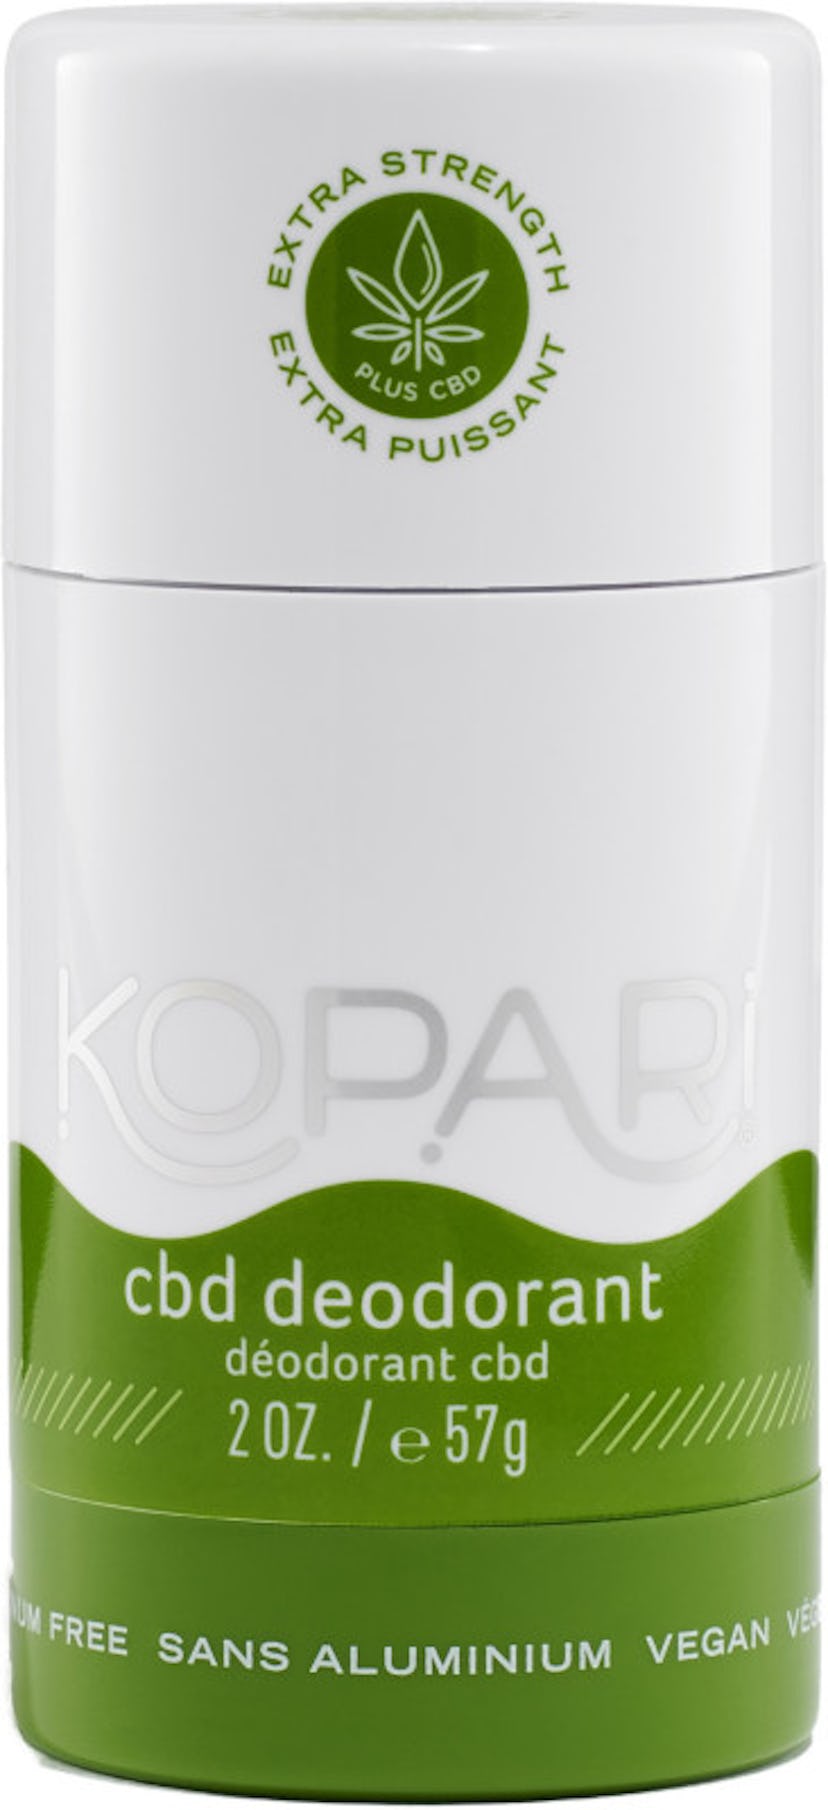 Kopari Beauty  CBD Deodorant